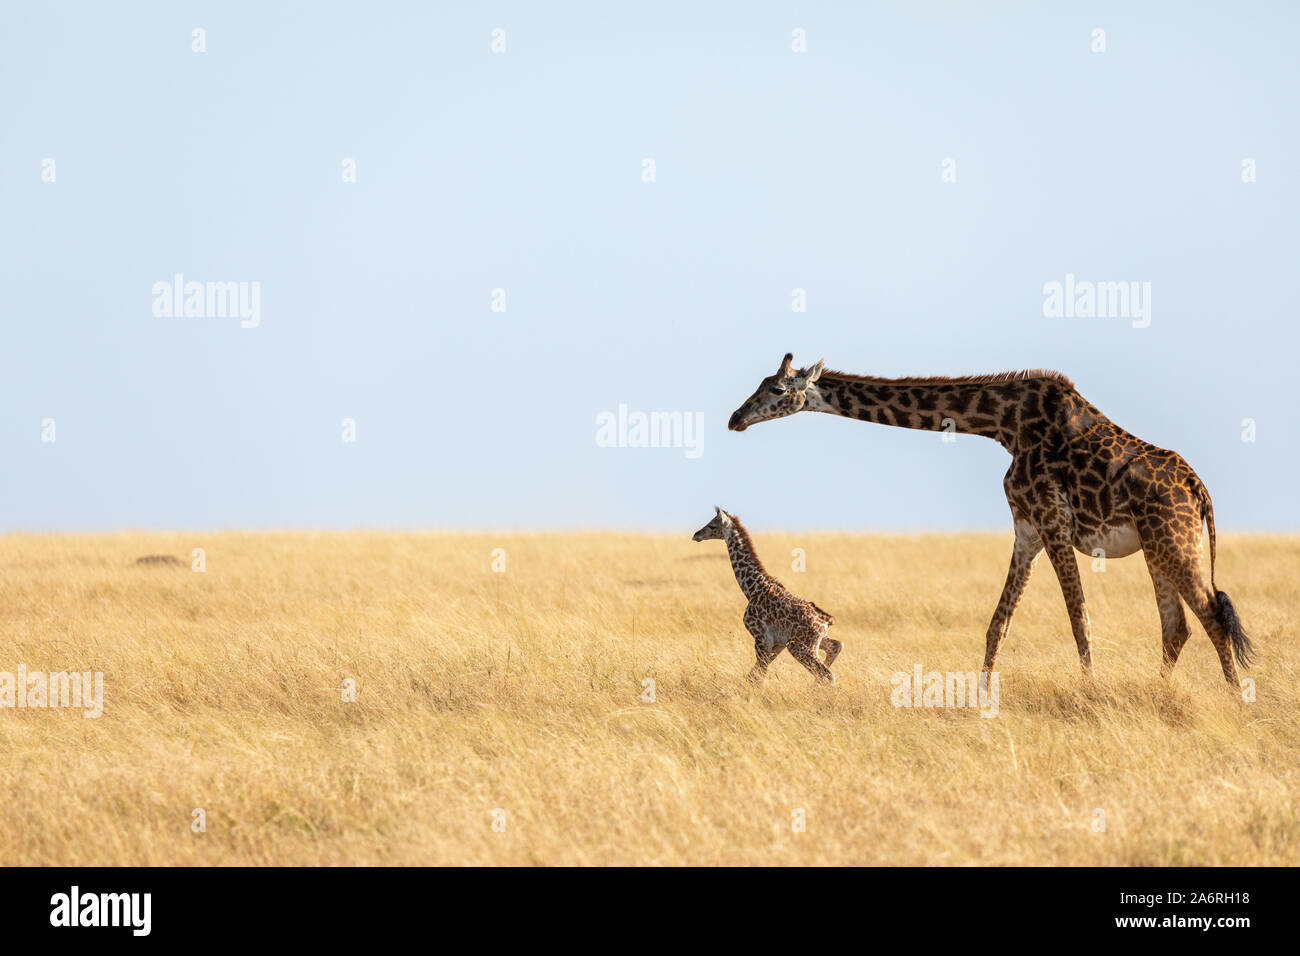 Masai Mara, Kenia, Afrika: Die weibliche Giraffe und ihr Kalb langsam Trek über der Masai Mara, Kenia. HEARTBREAKING Bilder zeigen eine Mutter giraffe acc Stockfoto